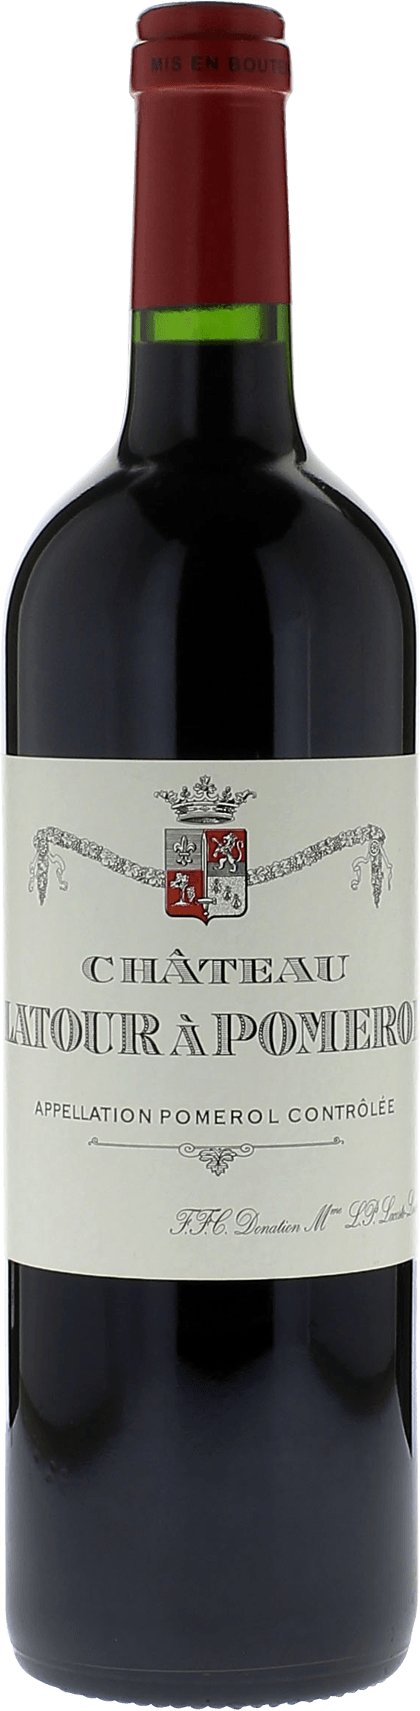 Latour  pomerol 1966  Pomerol, Bordeaux rouge